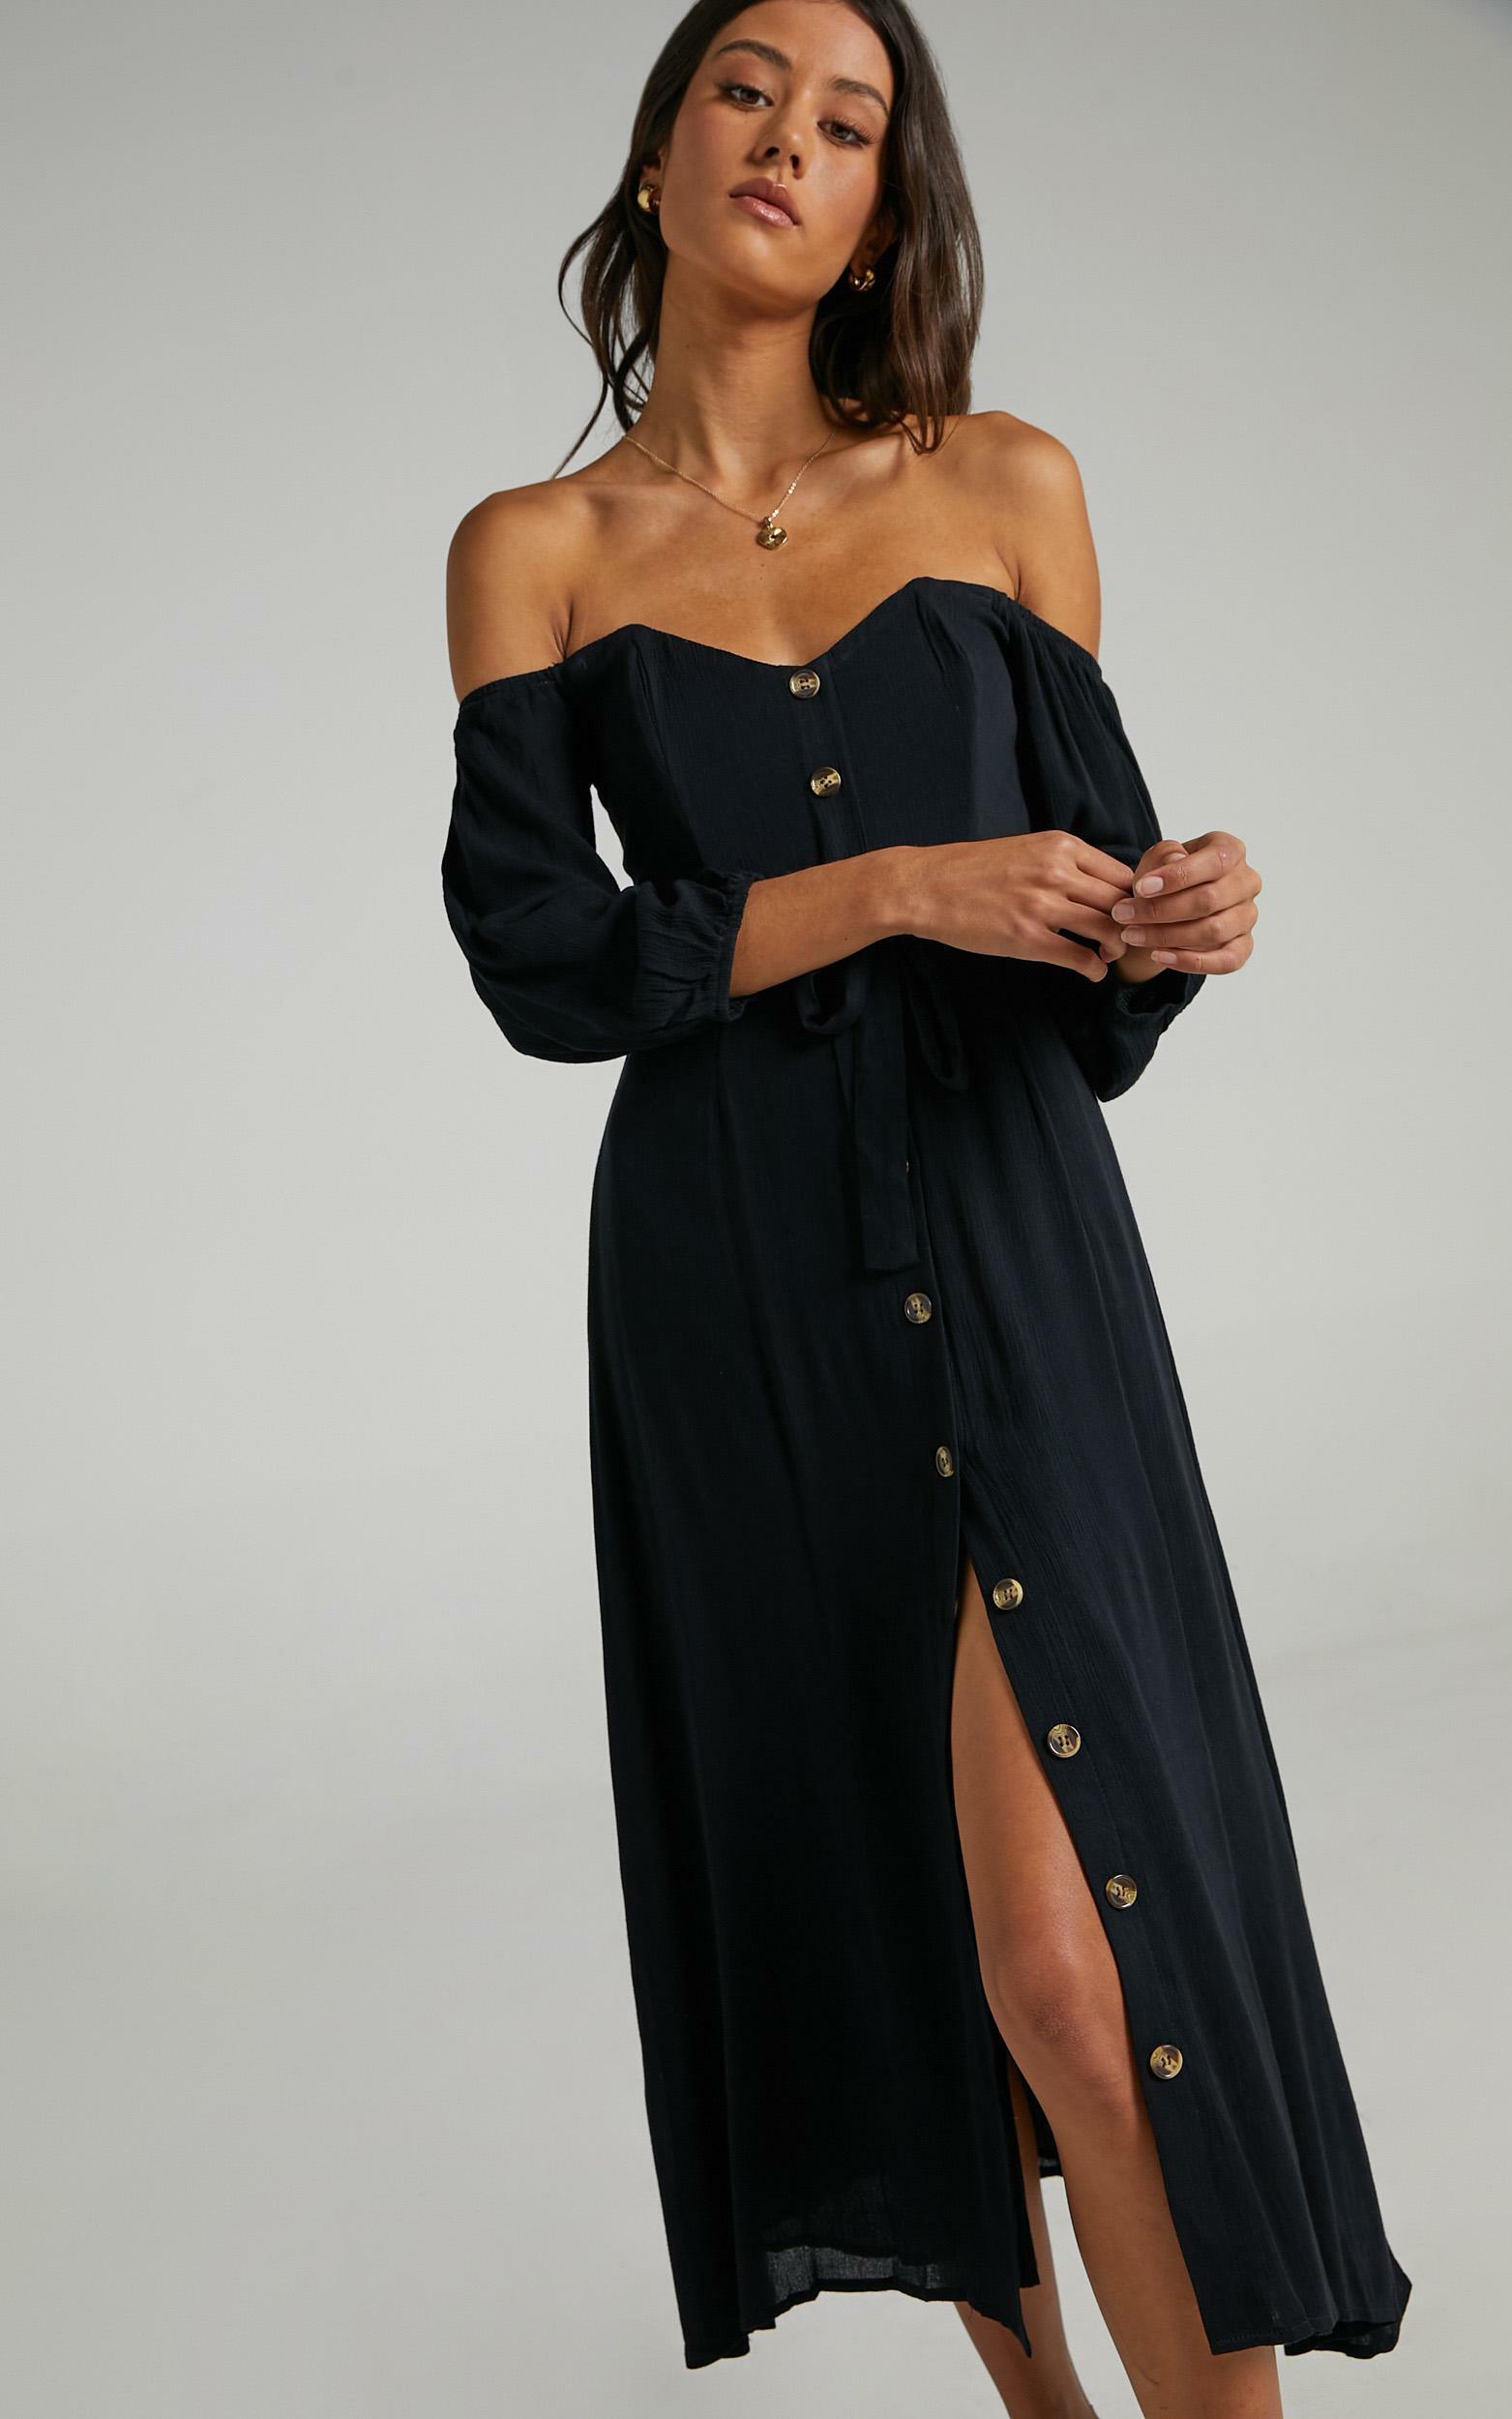 Sorrento Dreaming Dress in Black Linen Look - 04, BLK1, hi-res image number null